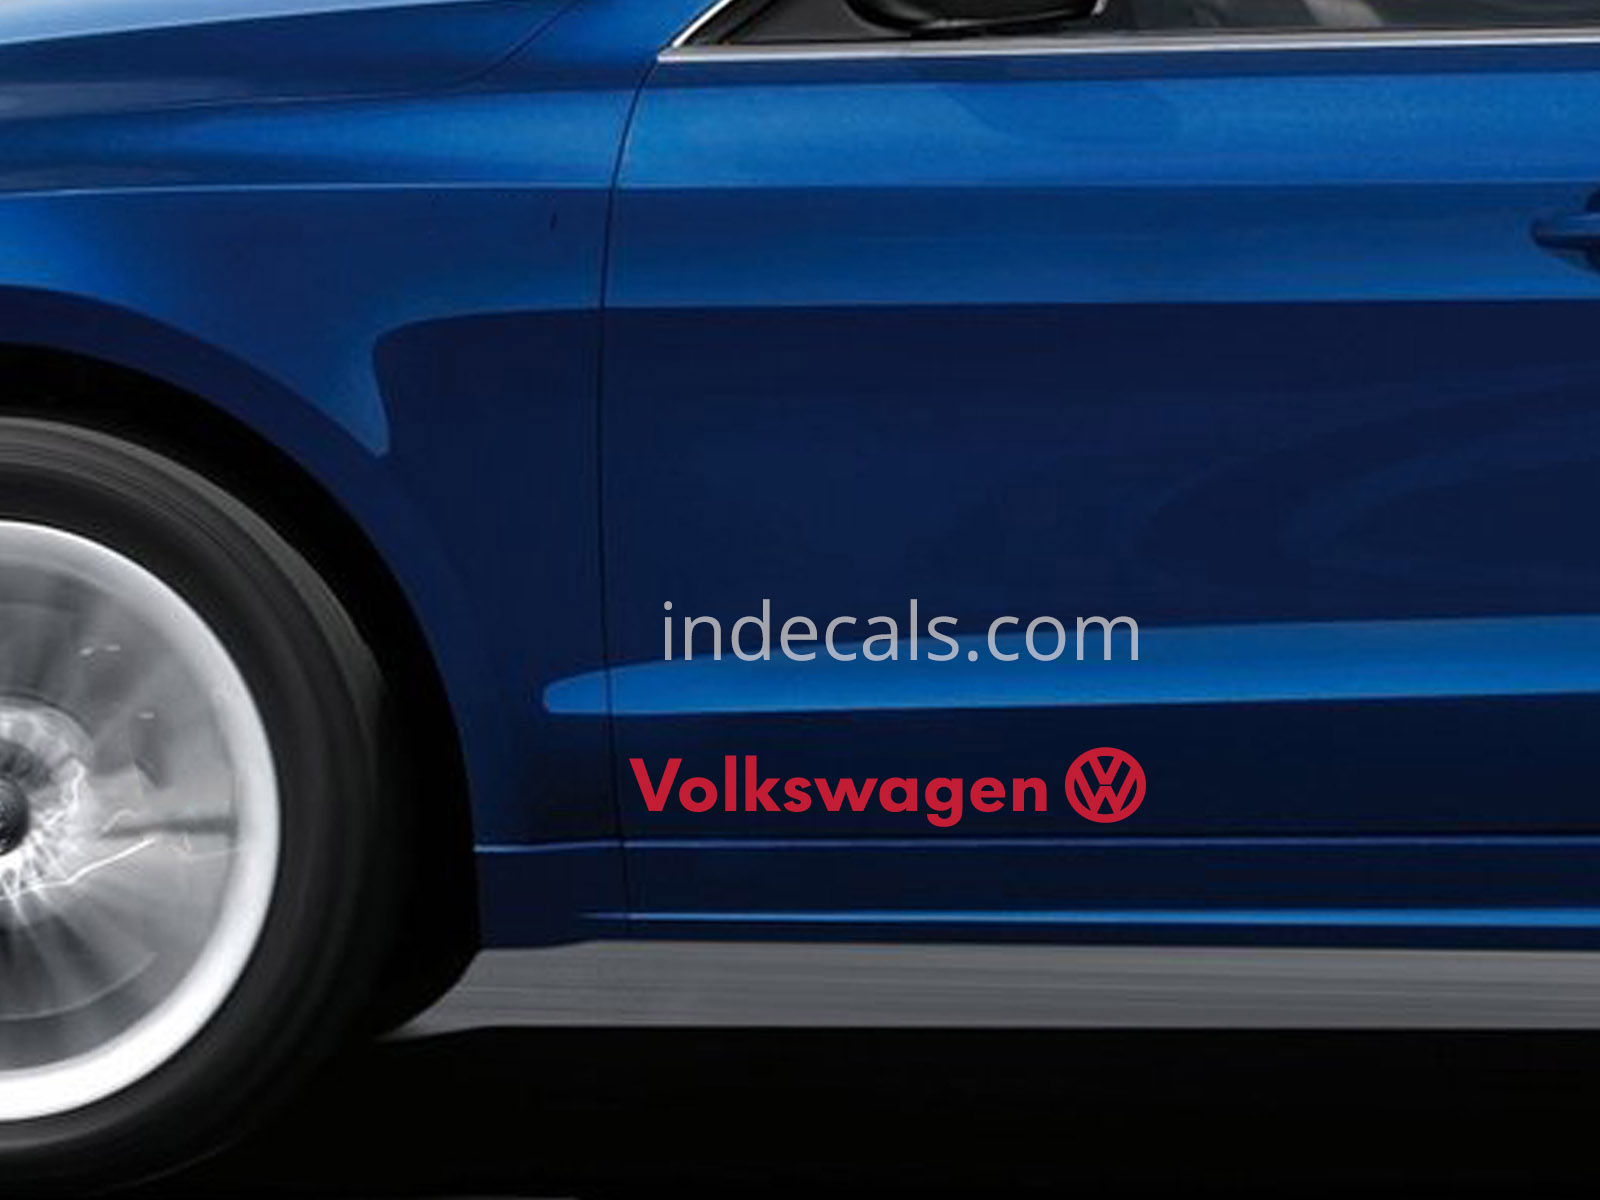 2 x Volkswagen Stickers for Doors Large - Red